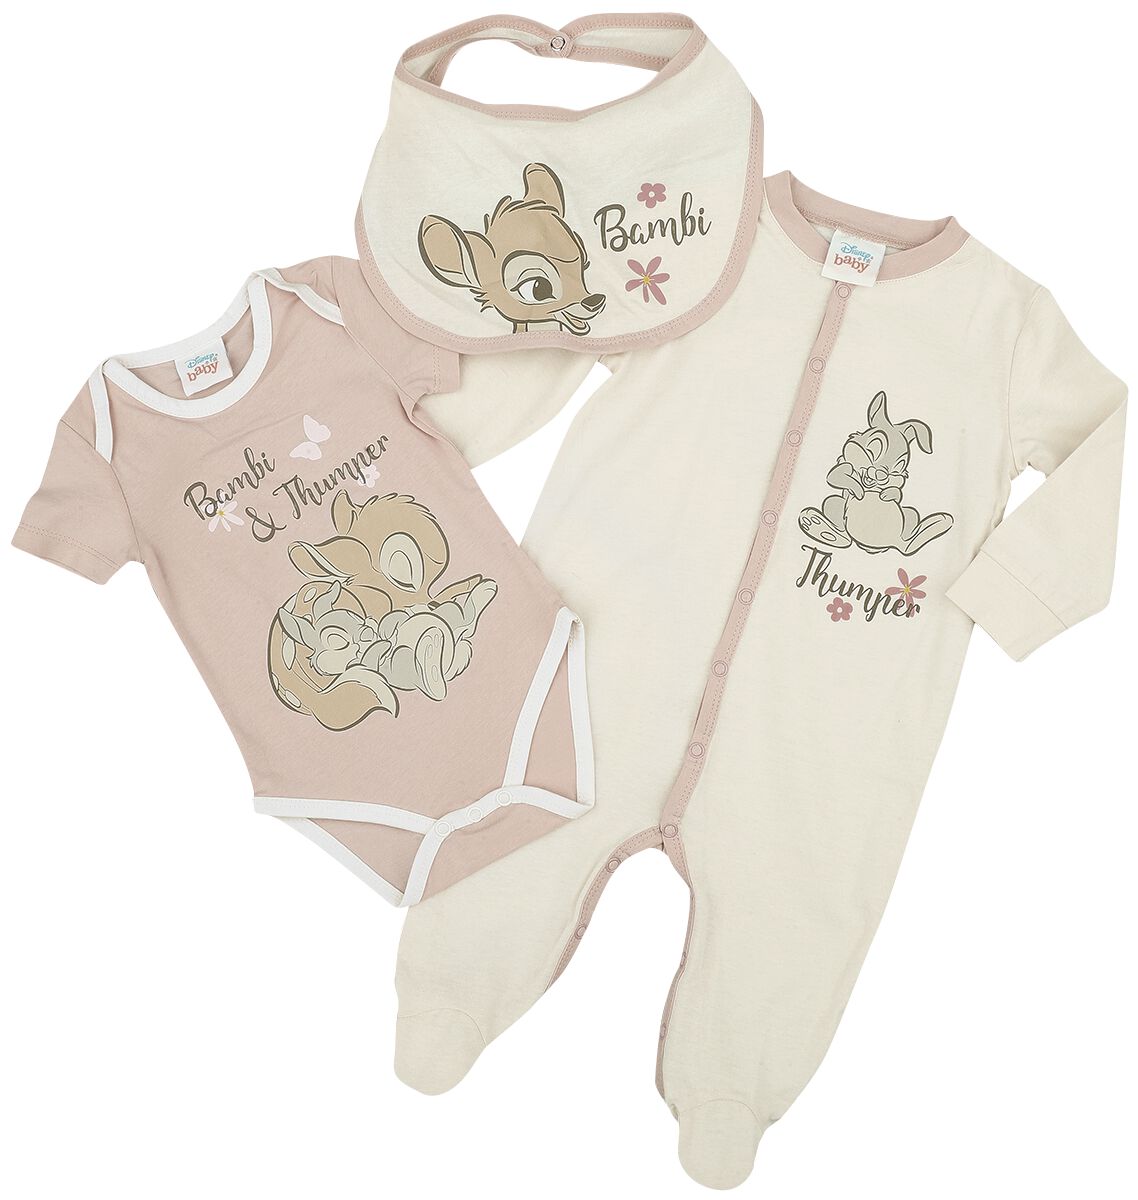 Bambi - Disney Set für Neugeborene - Kids - Bambi - für Mädchen - multicolor  - EMP exklusives Merchandise!